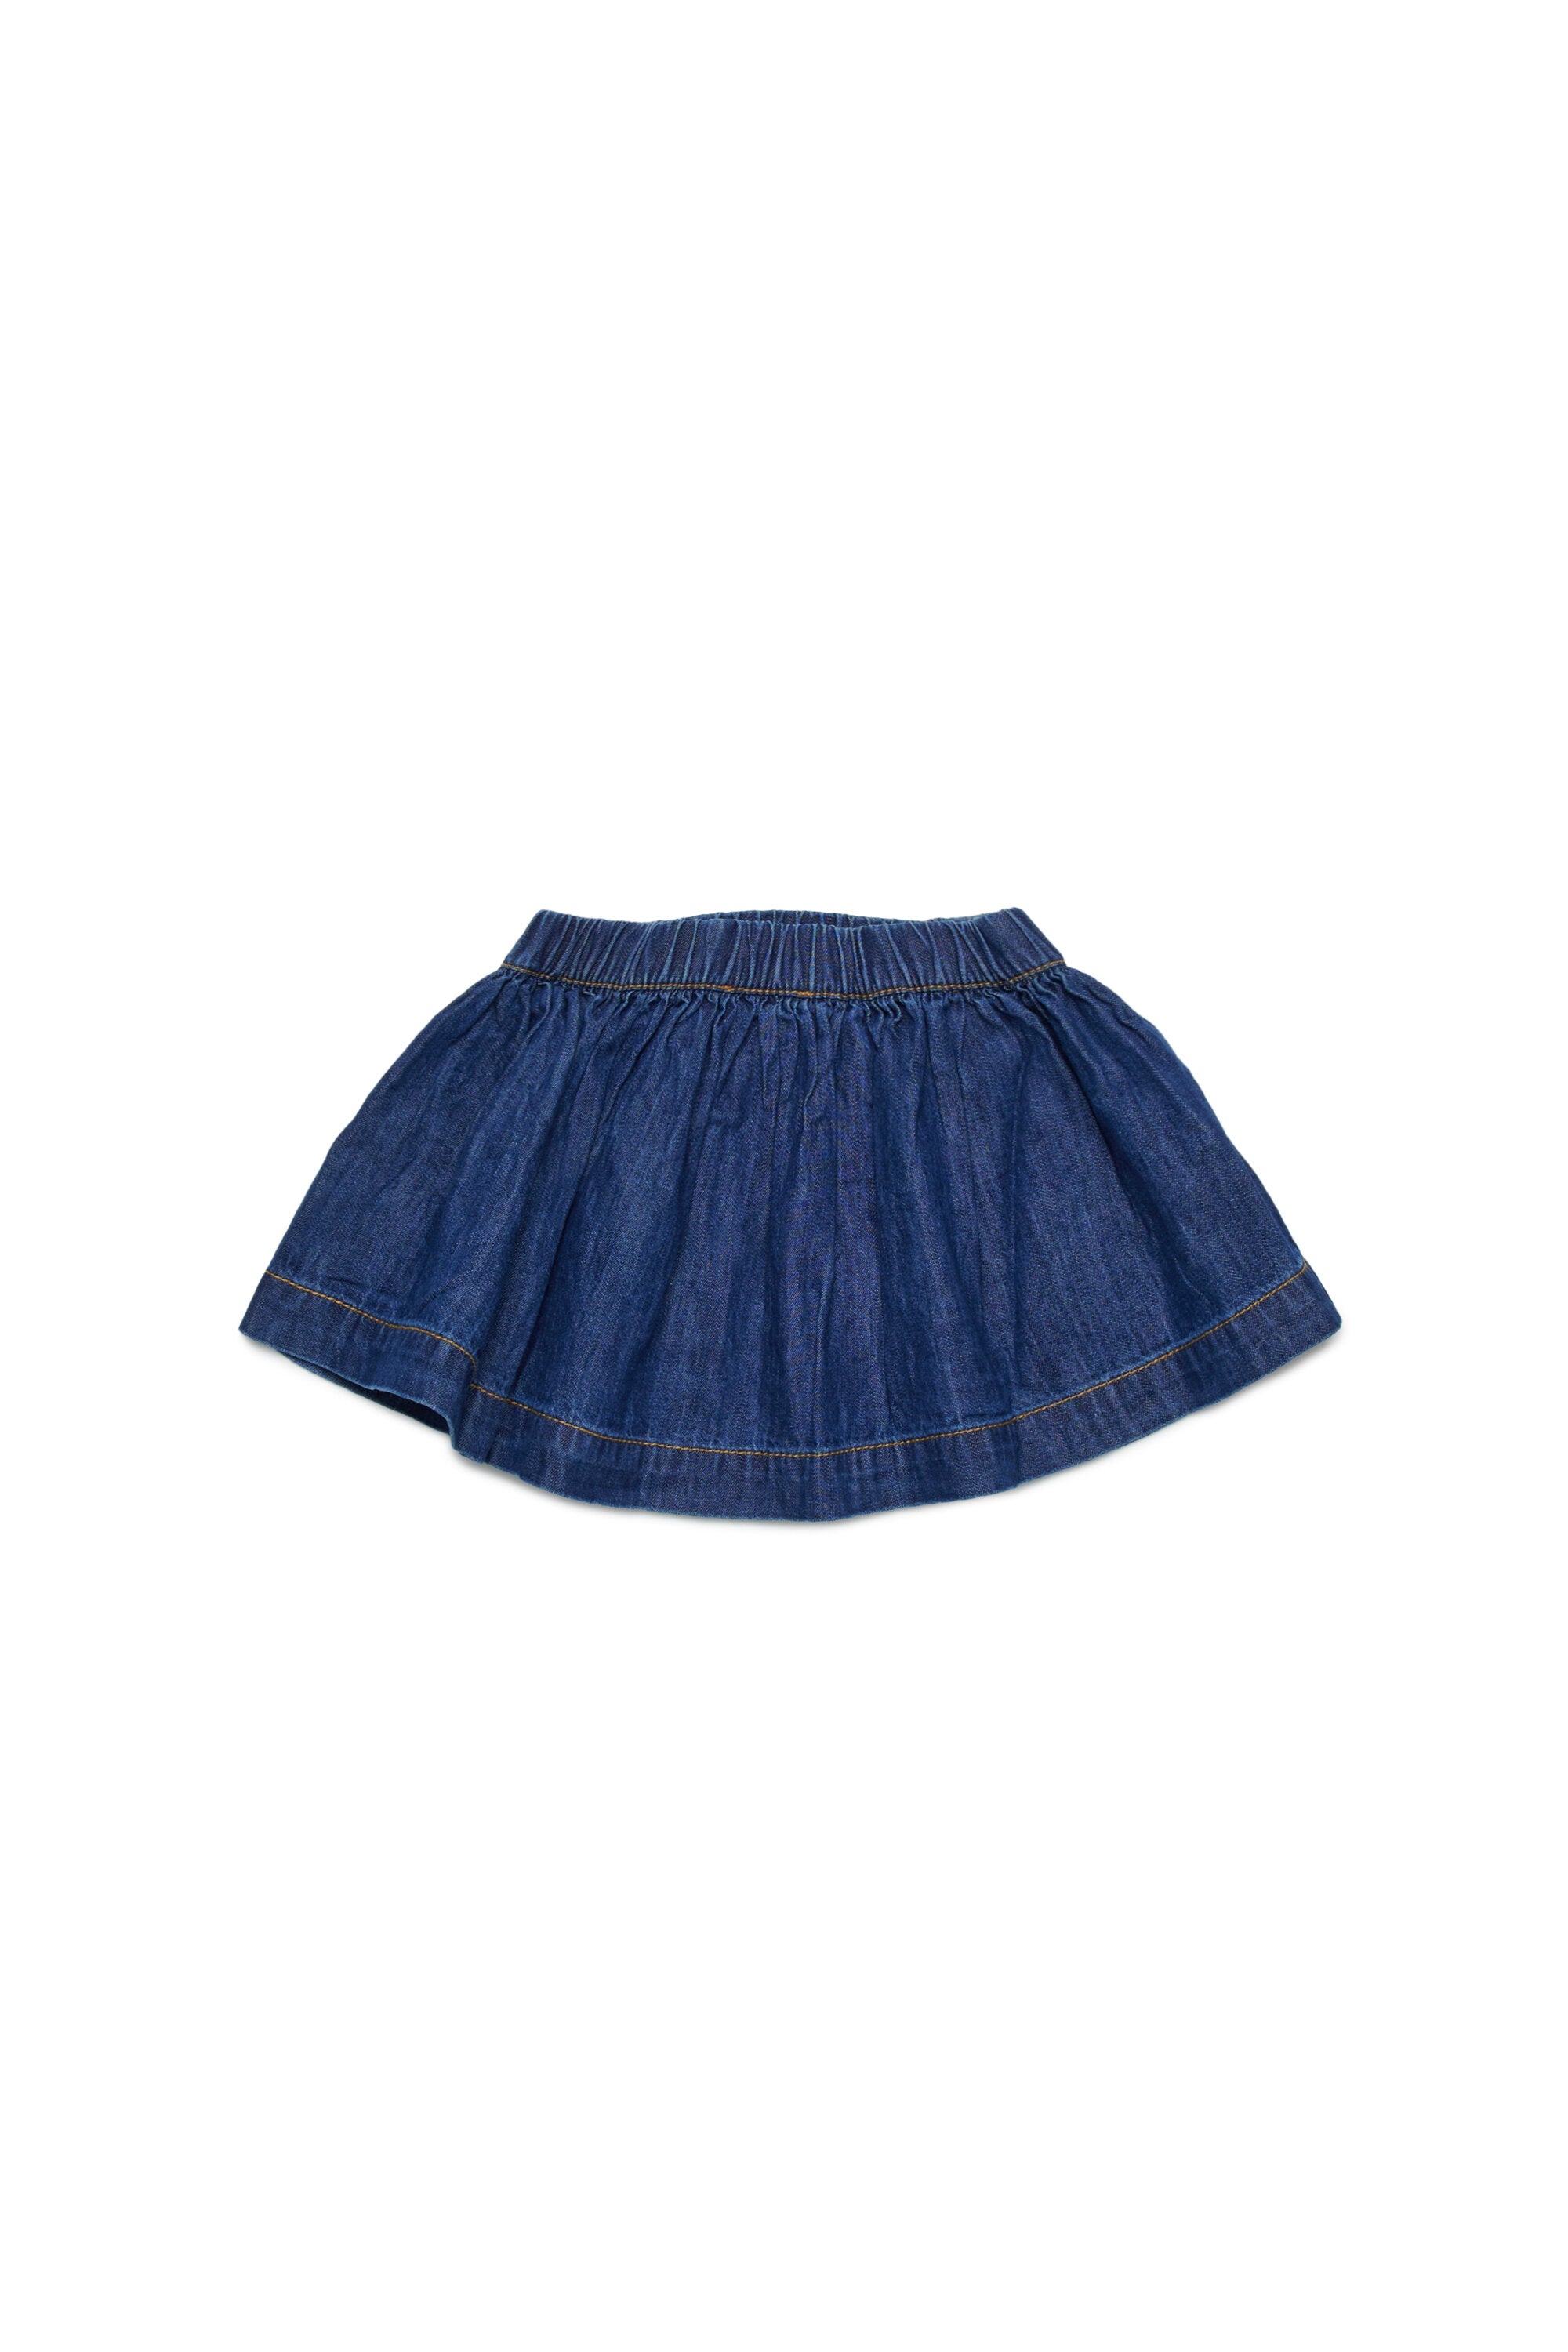 Lightweight denim skirt